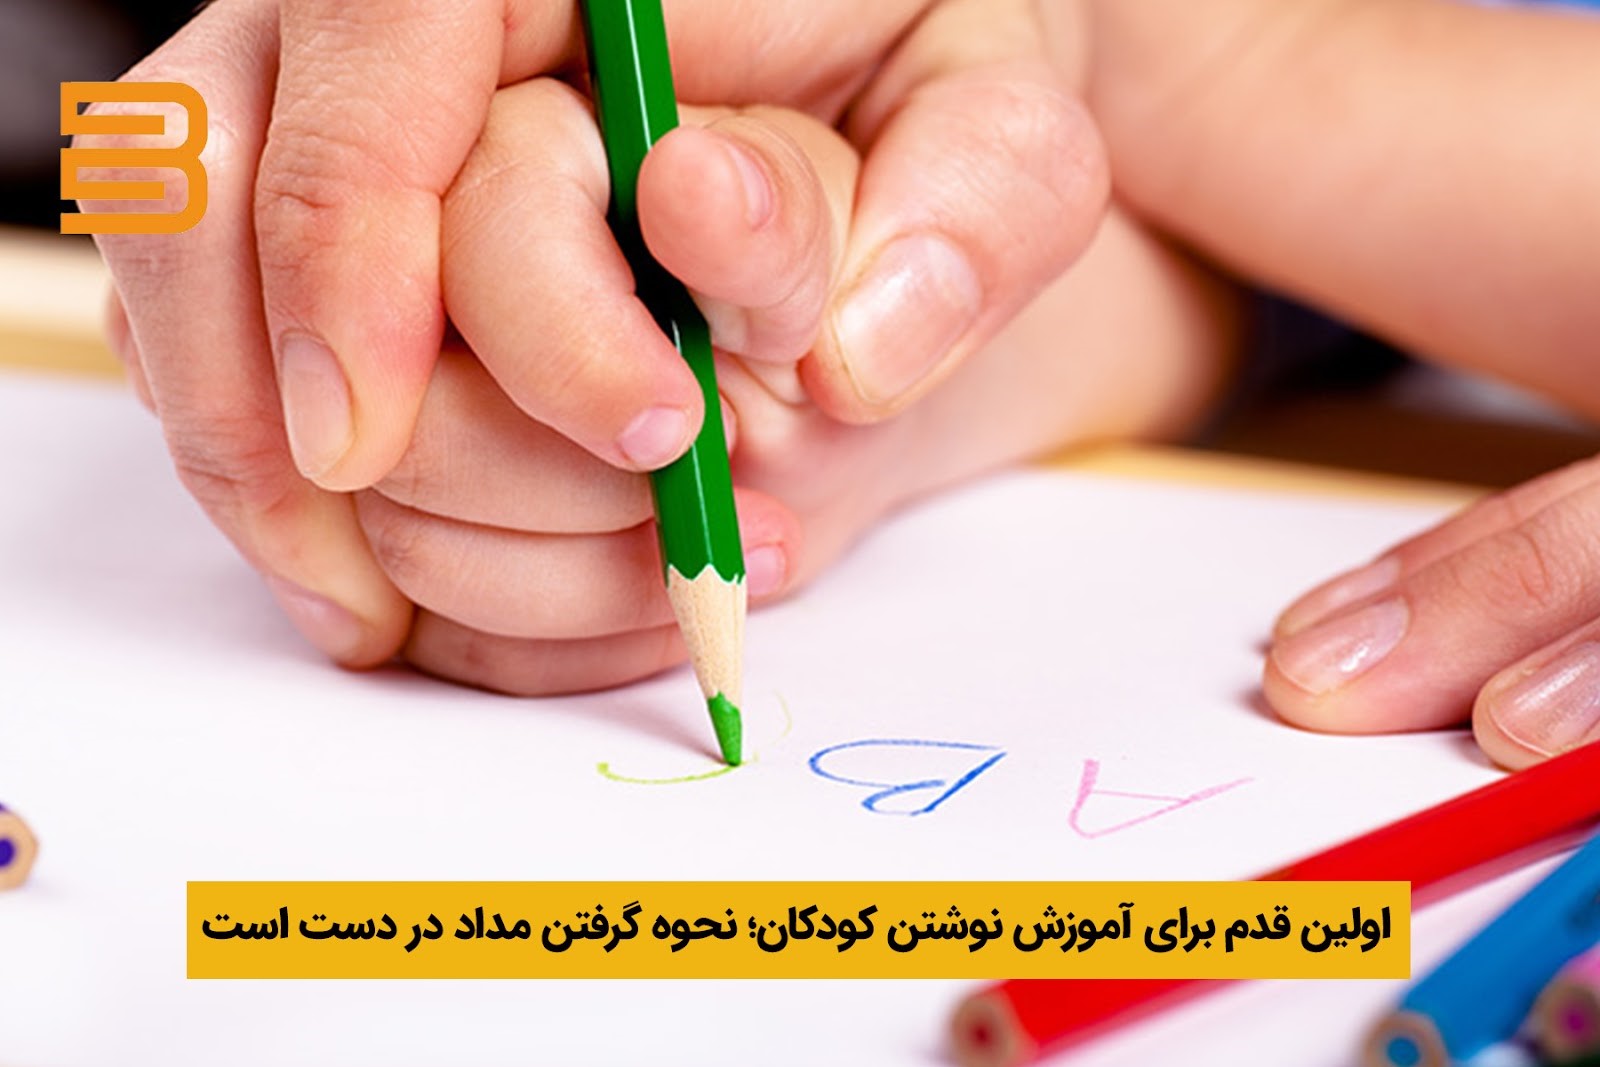 اولین قدم برای آموزش نوشتن کودکان؛ نحوه گرفتن مداد در دست